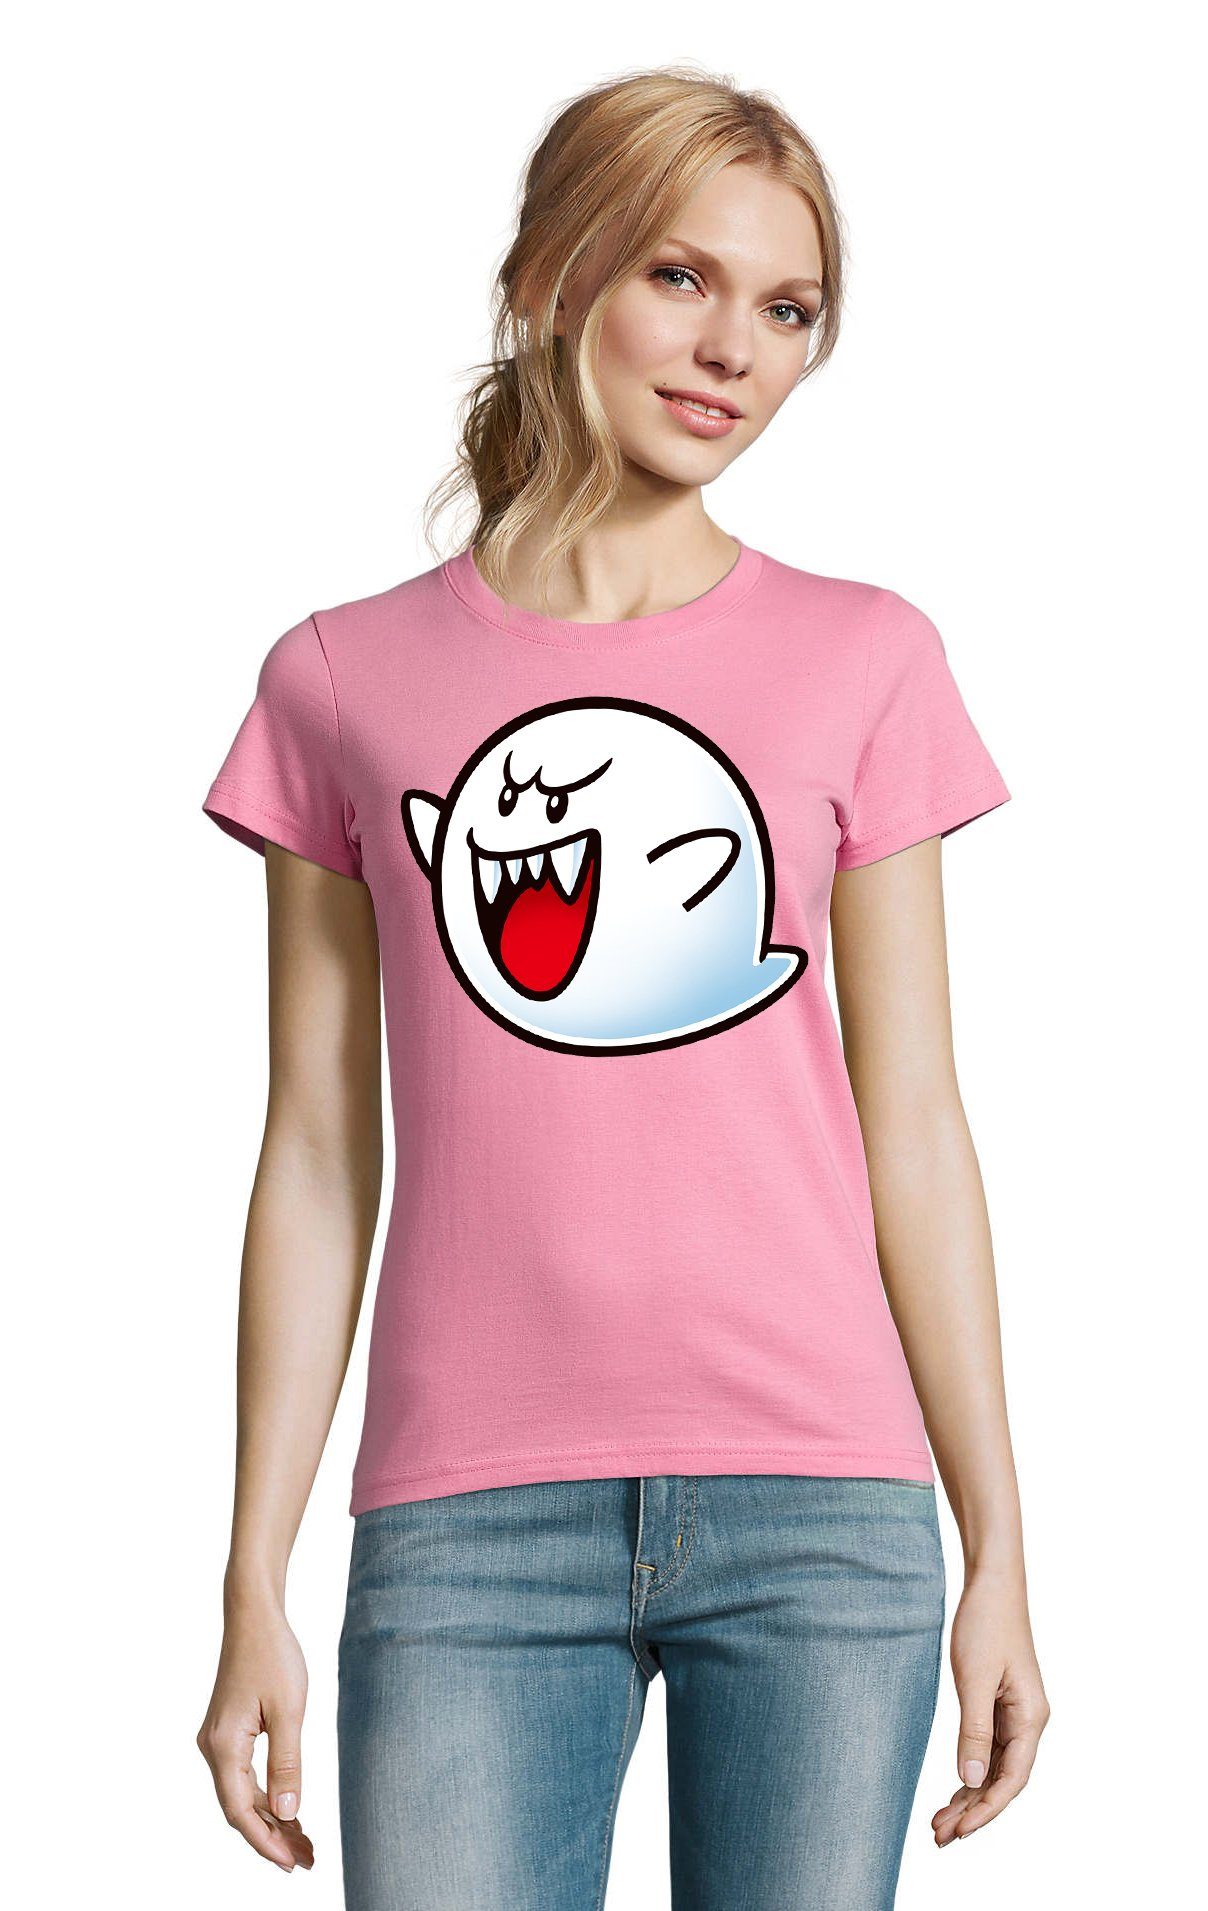 Blondie & Brownie T-Shirt Mario Konsole Gespenst Rosa Super Boo Damen Nintendo Geist